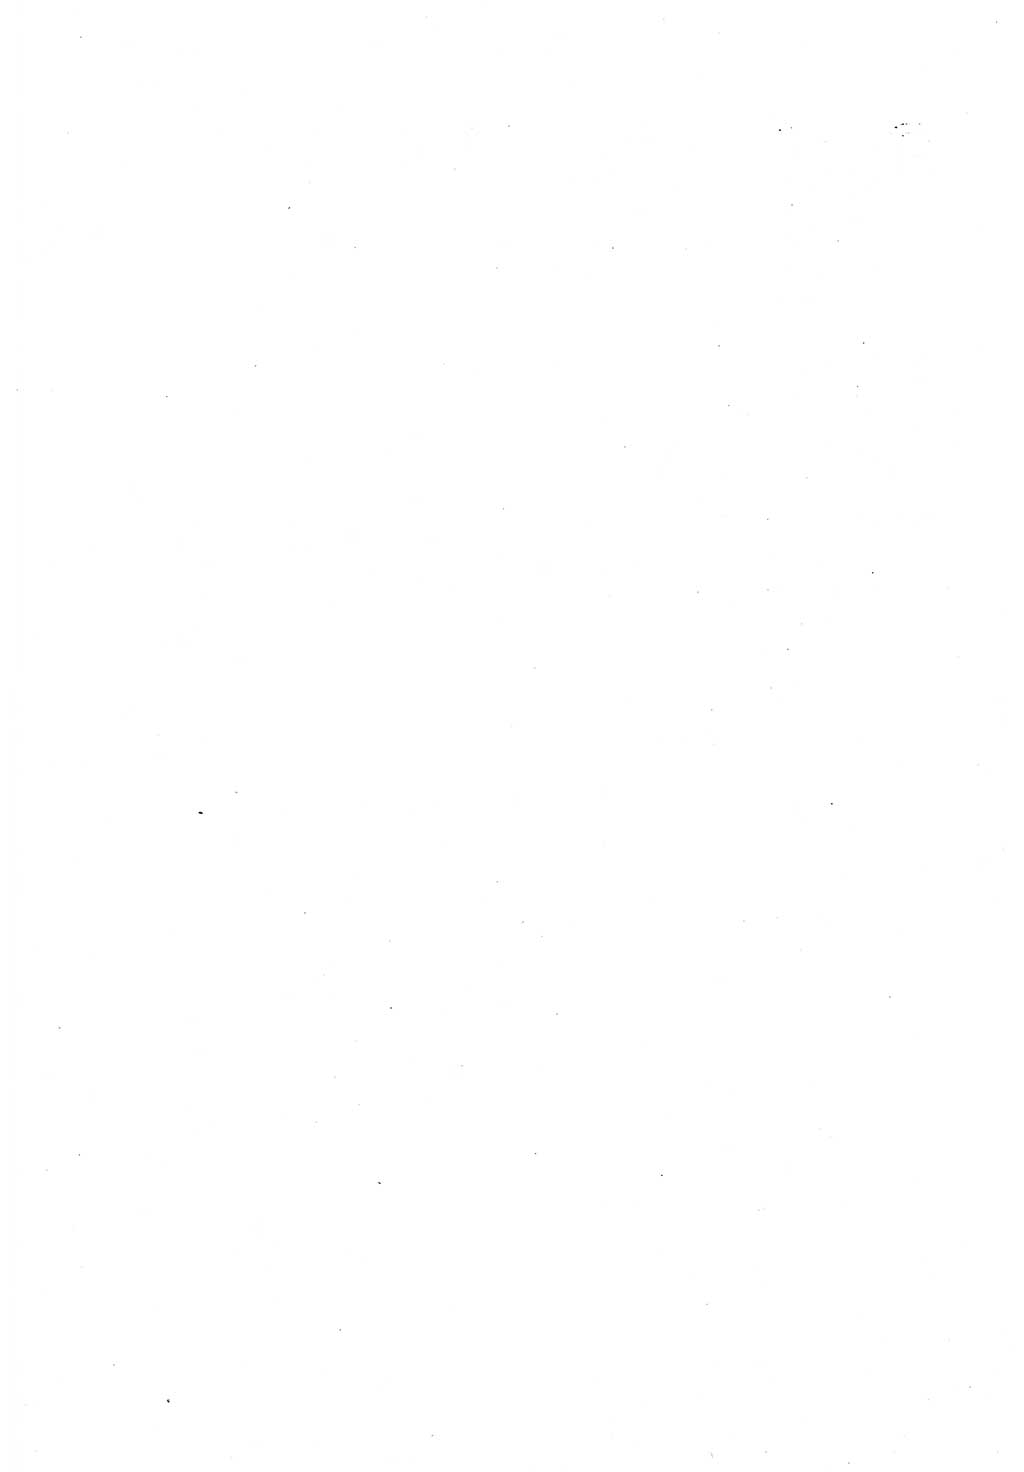 Erklärung des Politbüros des ZK (Zentralkomitee) der SED (Sozialistische Einheitspartei Deutschlands) [Deutsche Demokratische Republik (DDR)] 1989, Seite 2 (Erkl. PB ZK SED DDR 1989, S. 2)